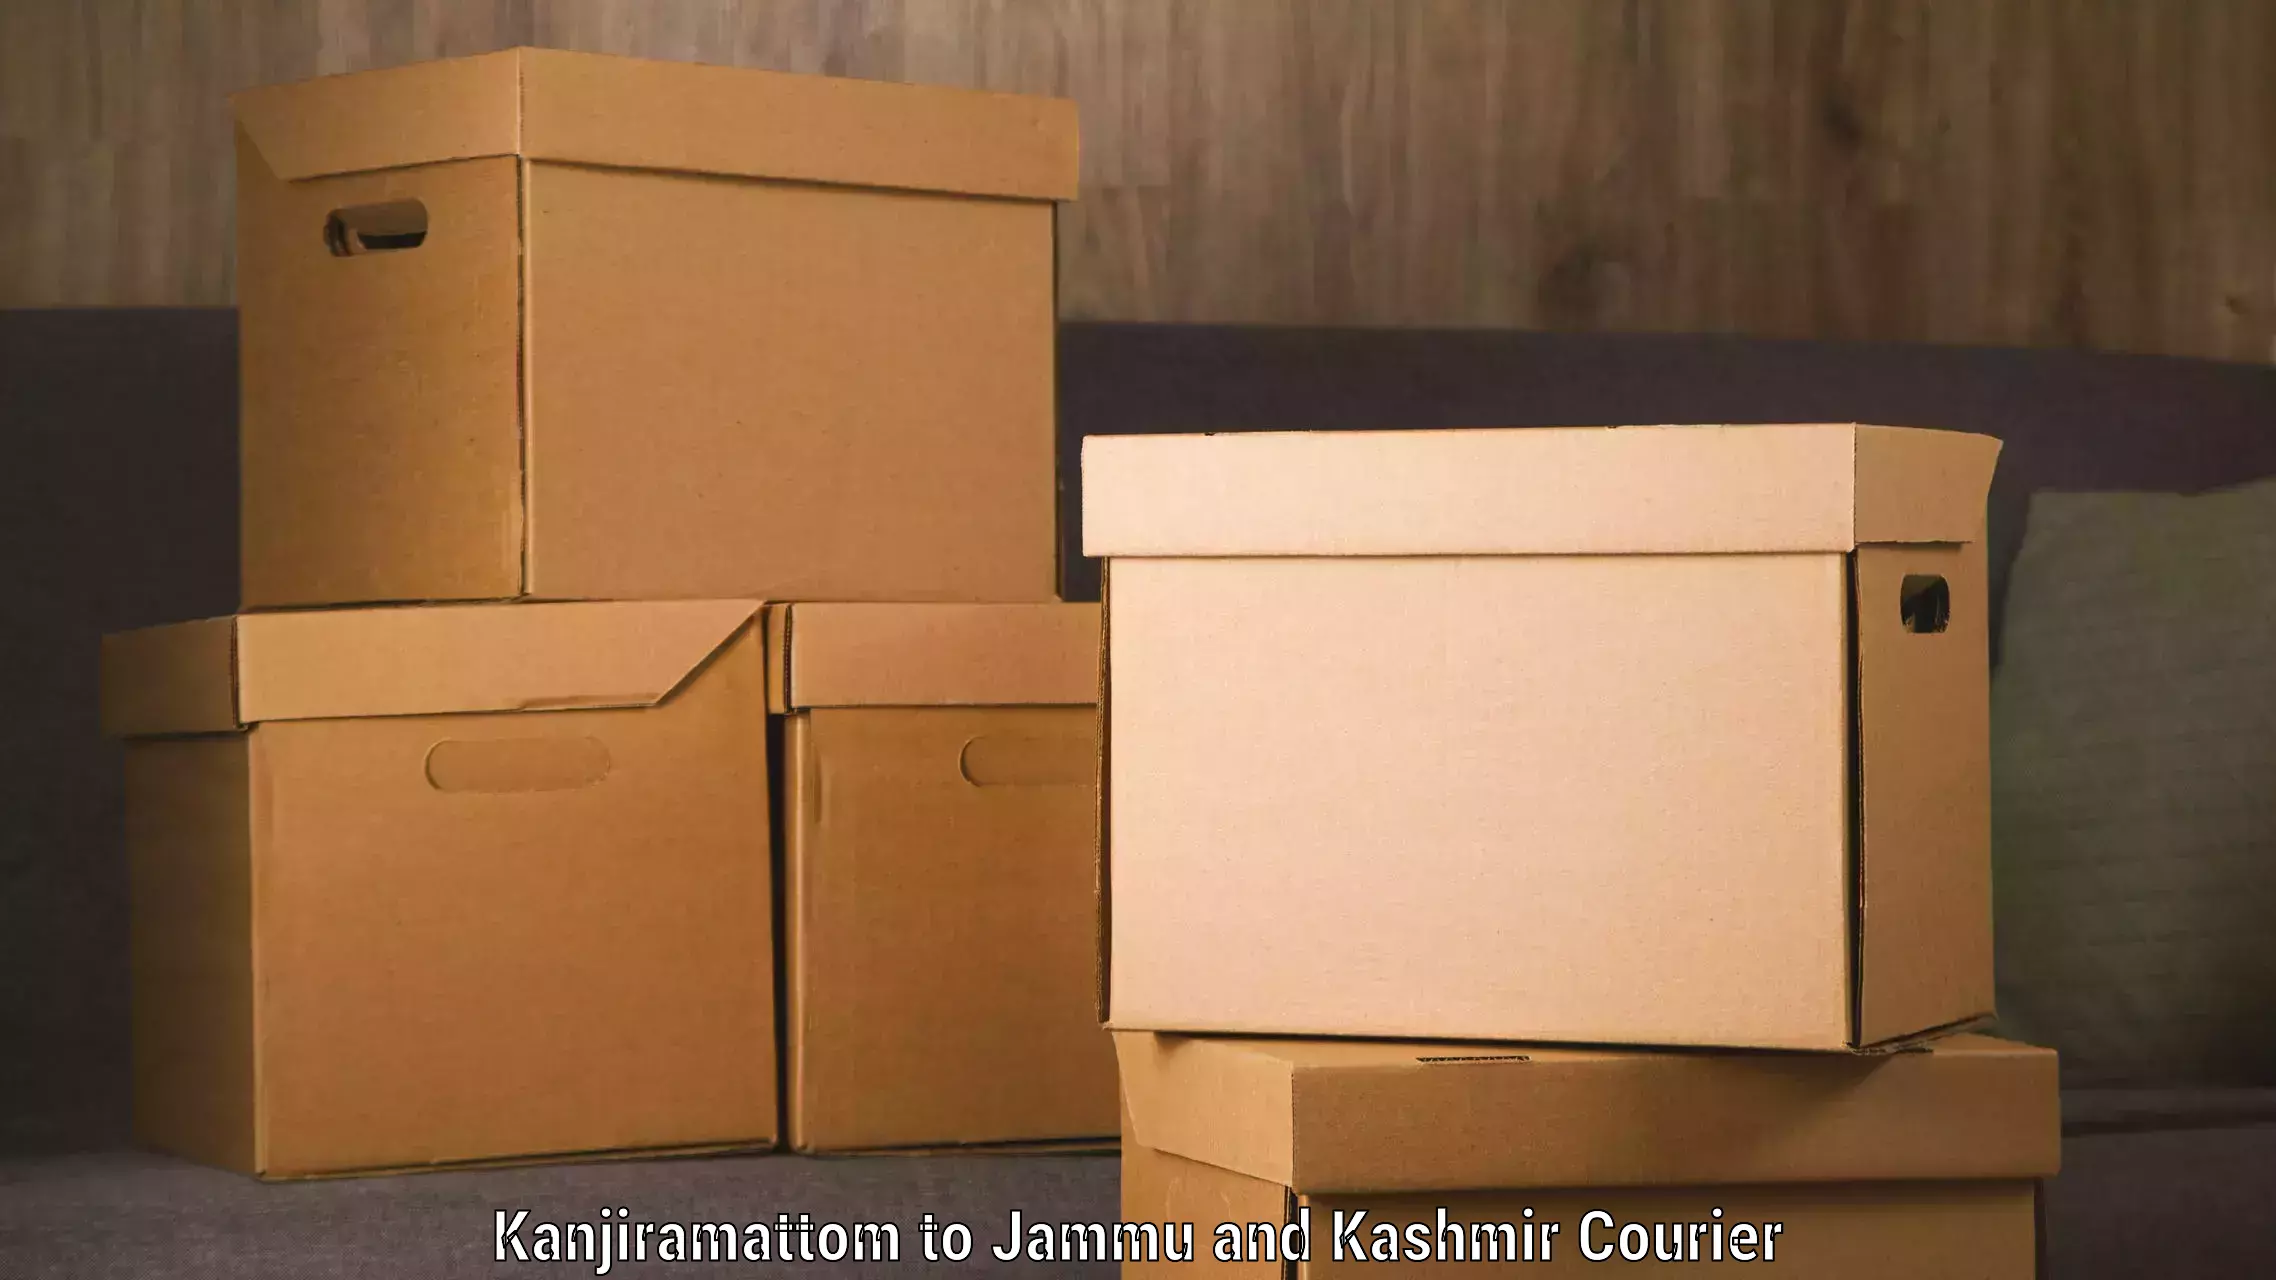 High-performance logistics Kanjiramattom to Jakh